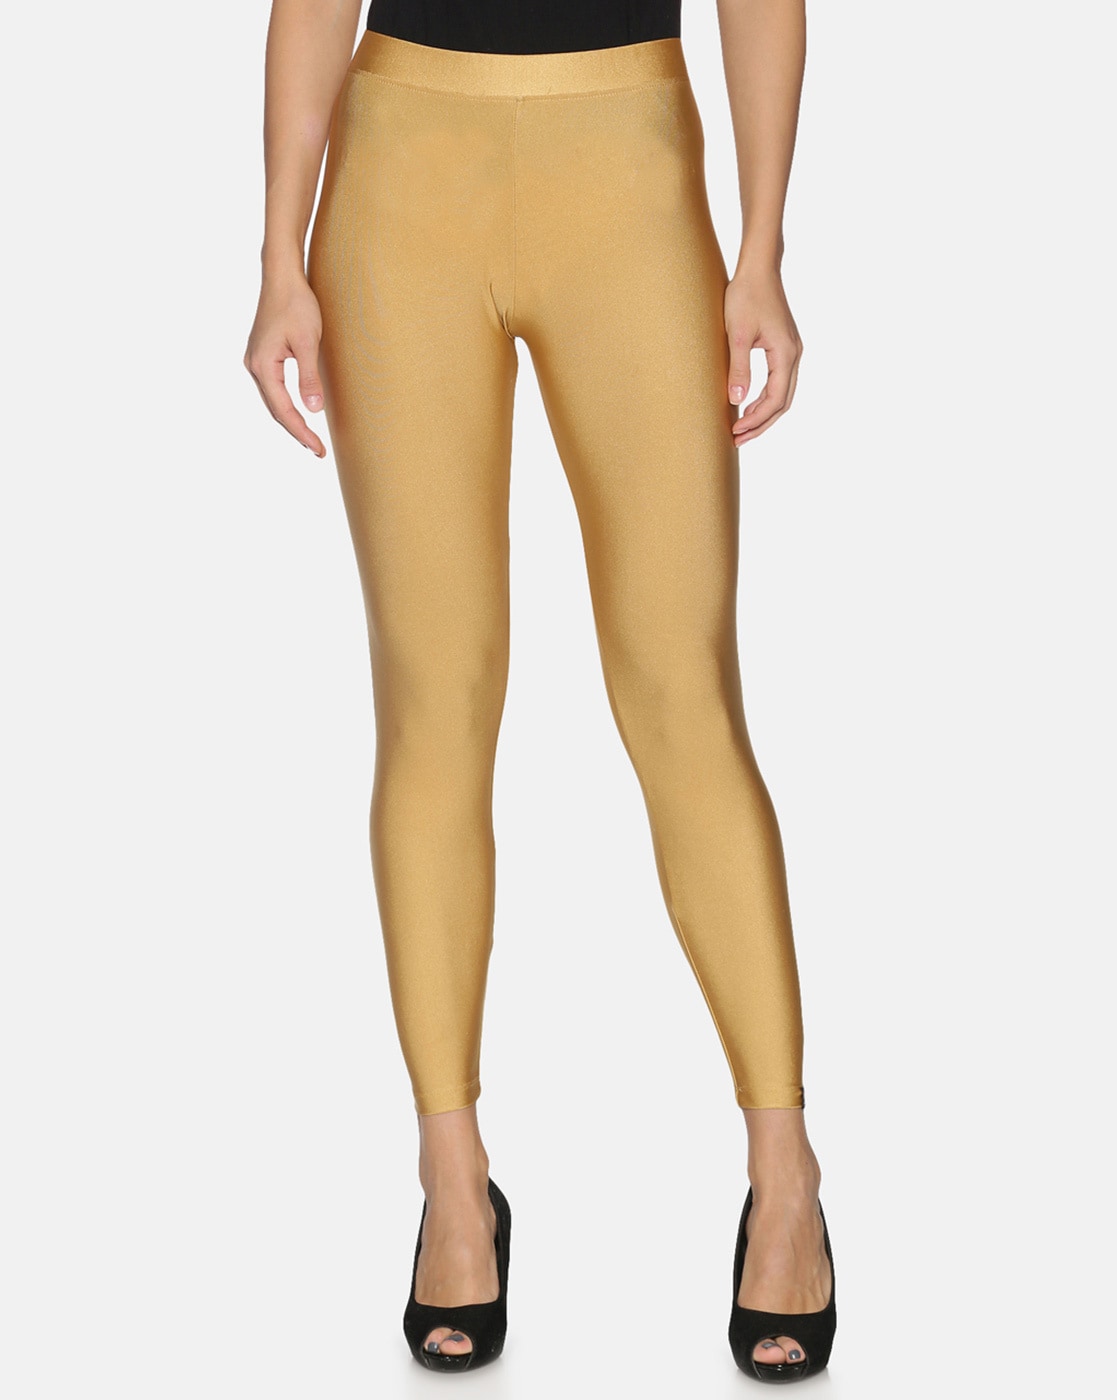 Share more than 142 golden colour leggings